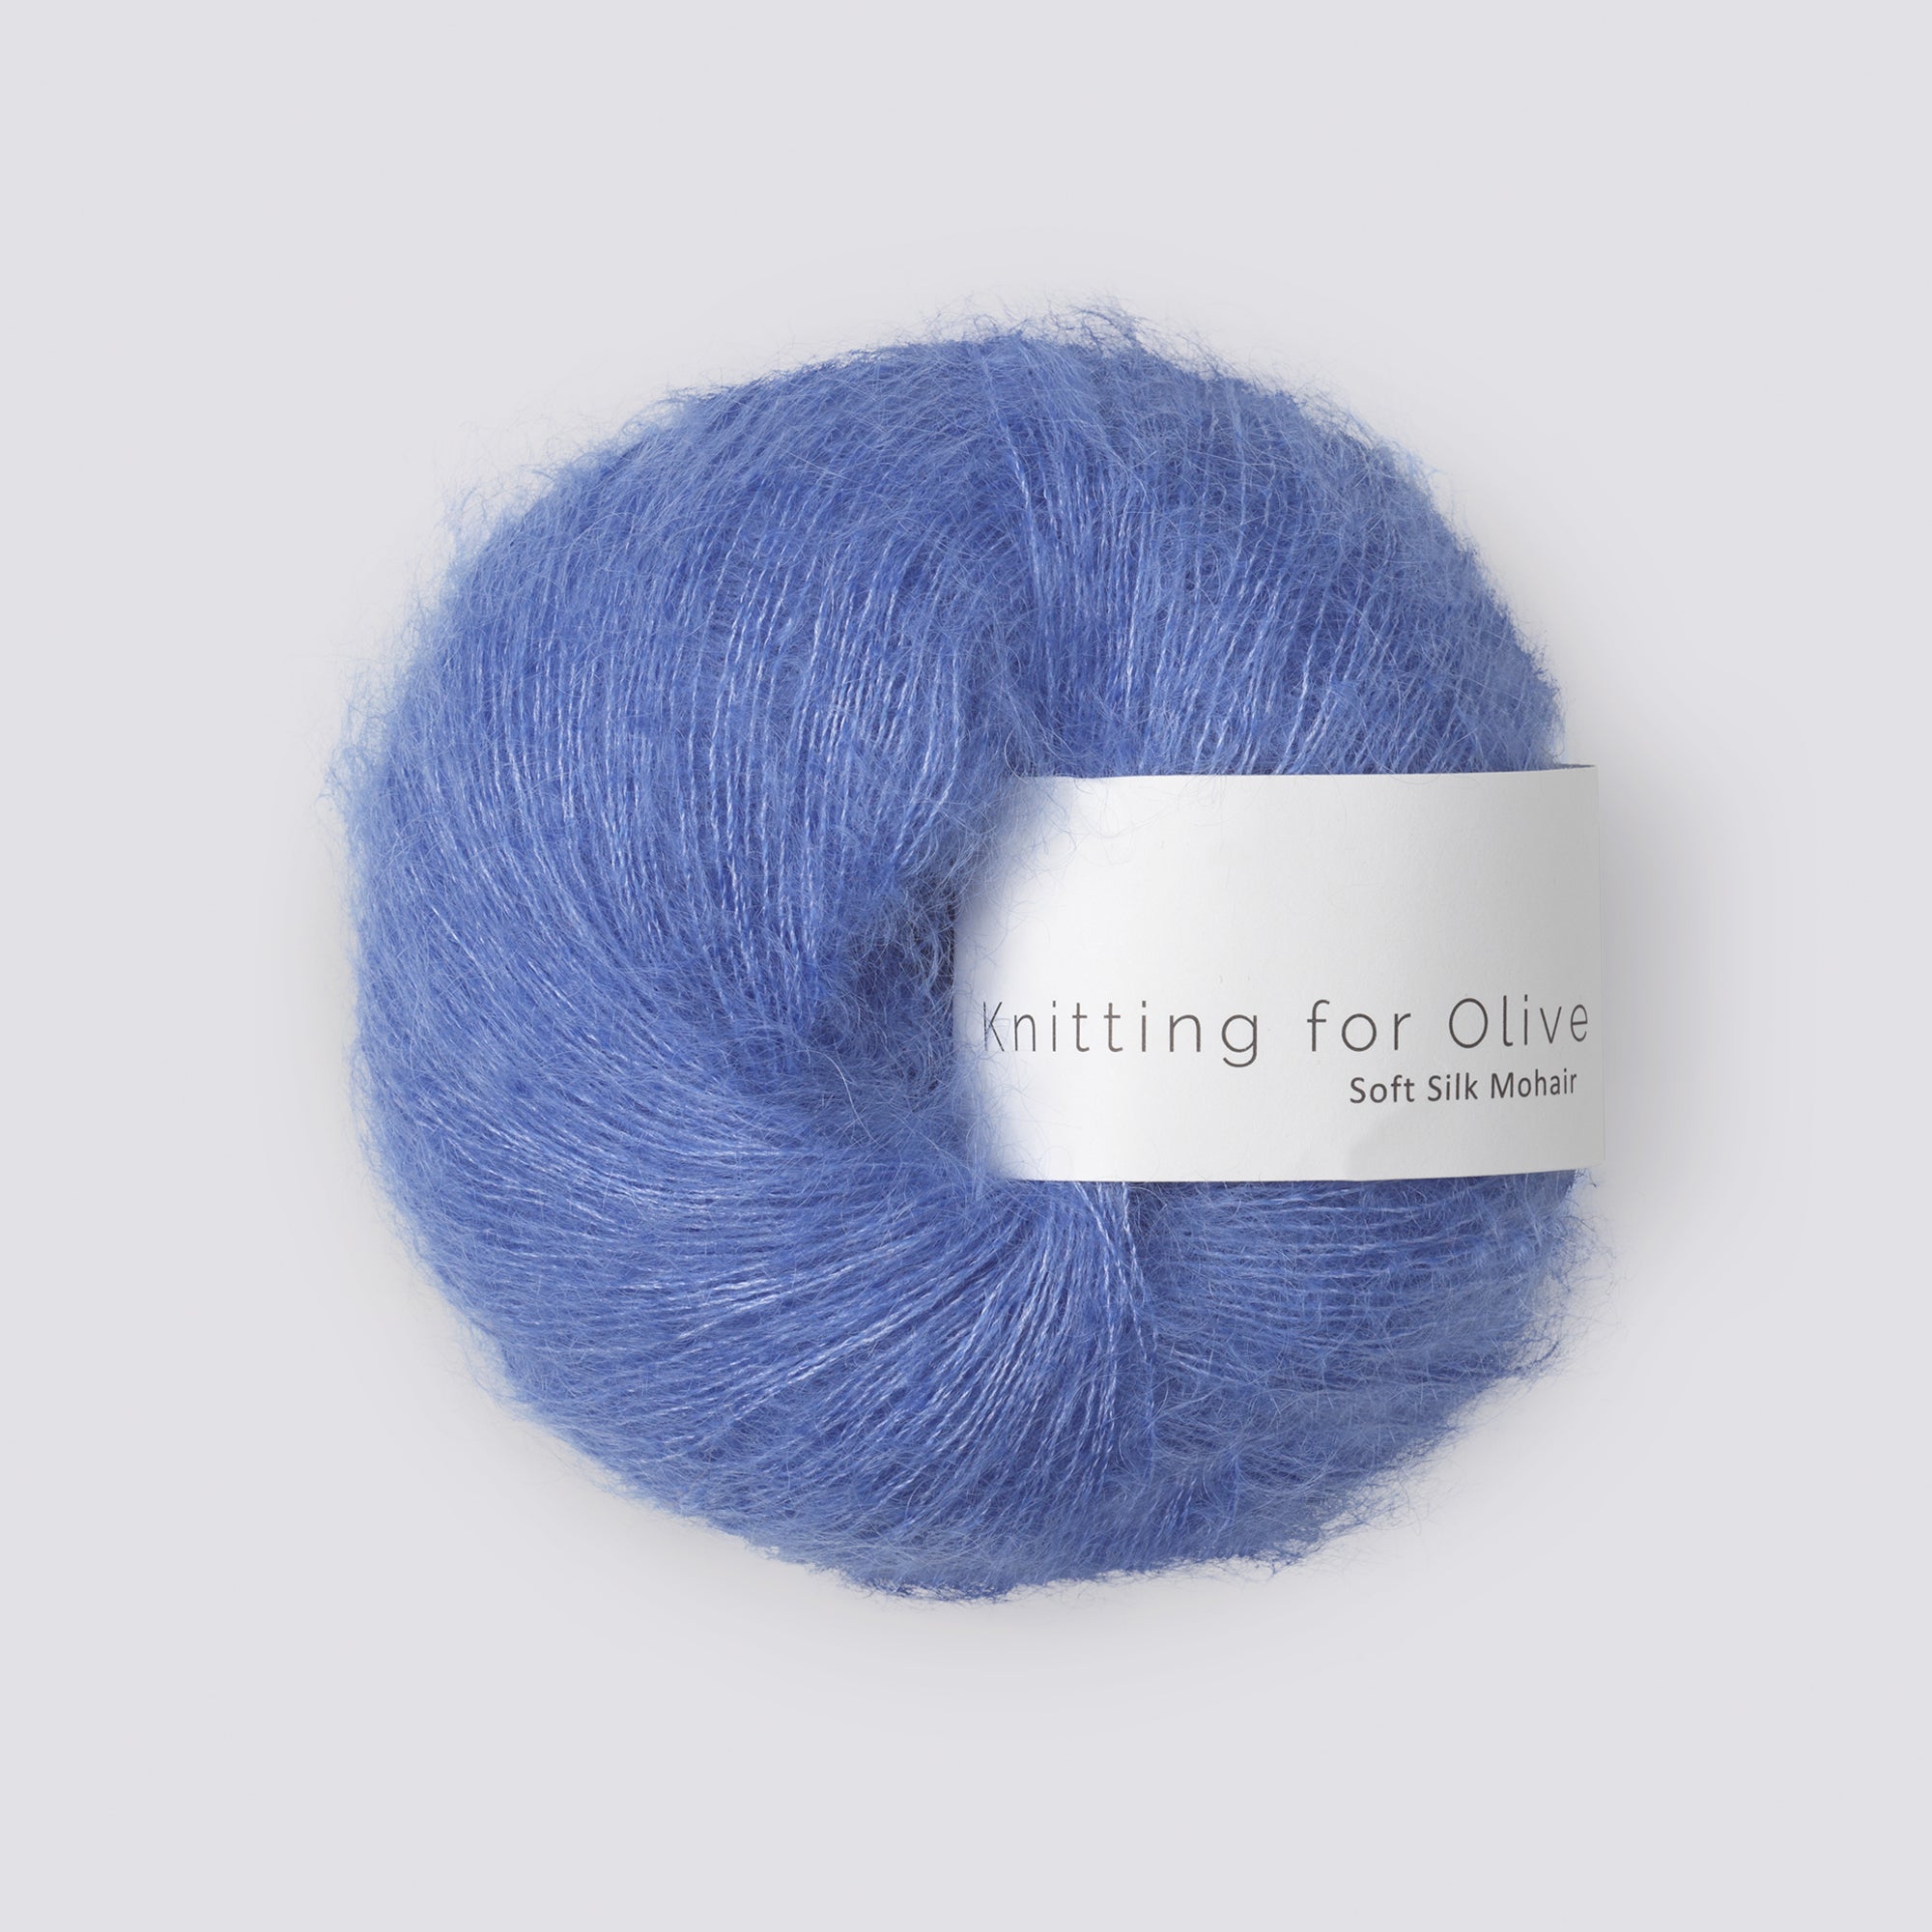 Knitting for Olive Soft Silk Mohair - Lavendelblau